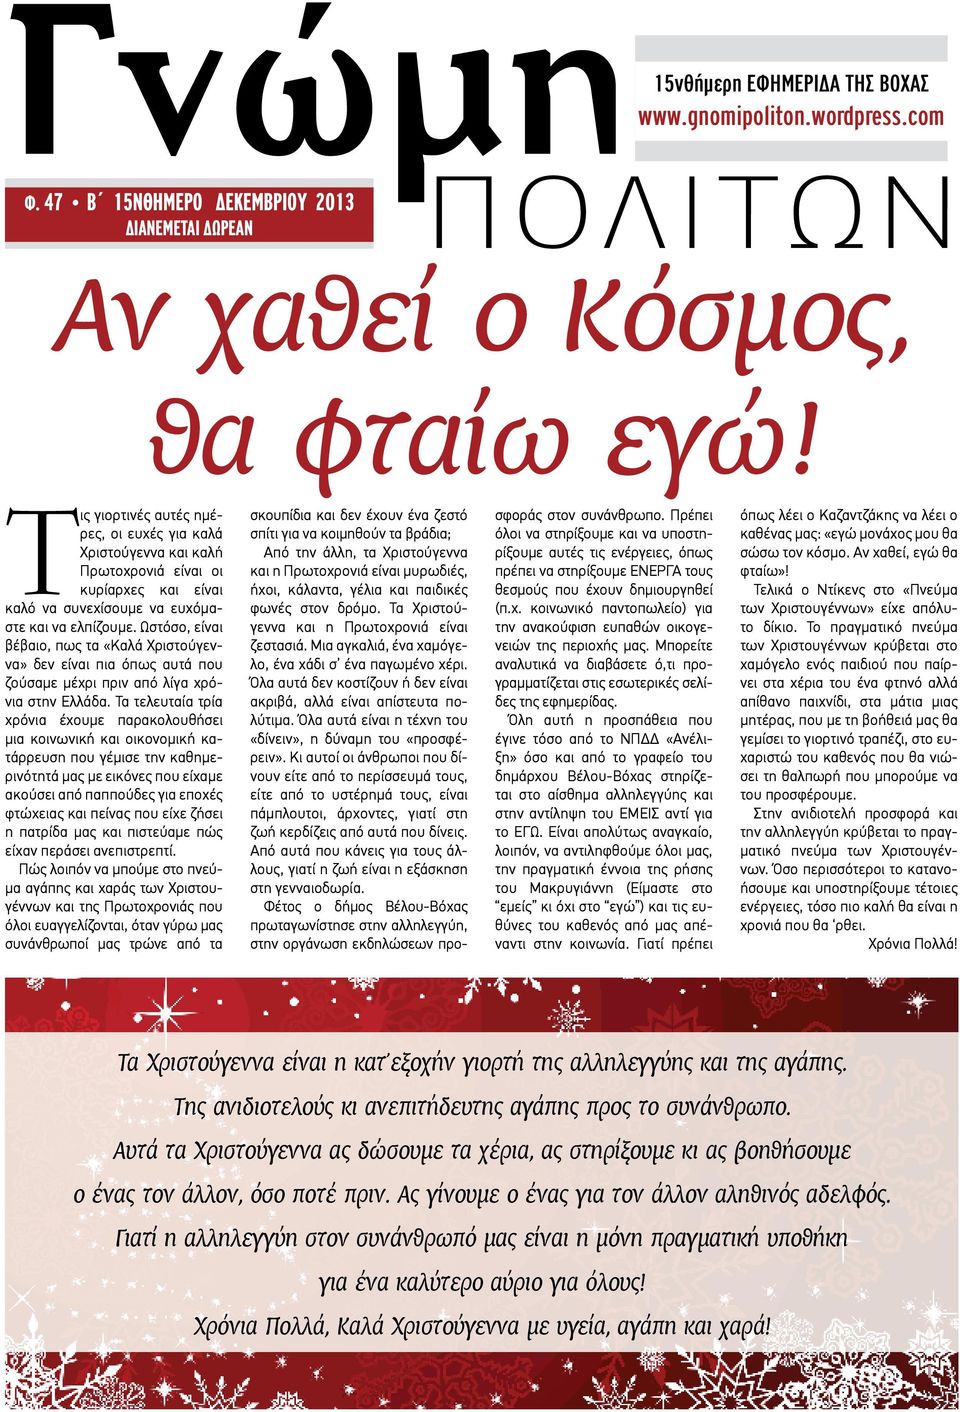 Ωστόσο, είναι βέβαιο, πως τα «Καλά Χριστούγεννα» δεν είναι πια όπως αυτά που ζούσαμε μέχρι πριν από λίγα χρόνια στην Ελλάδα.